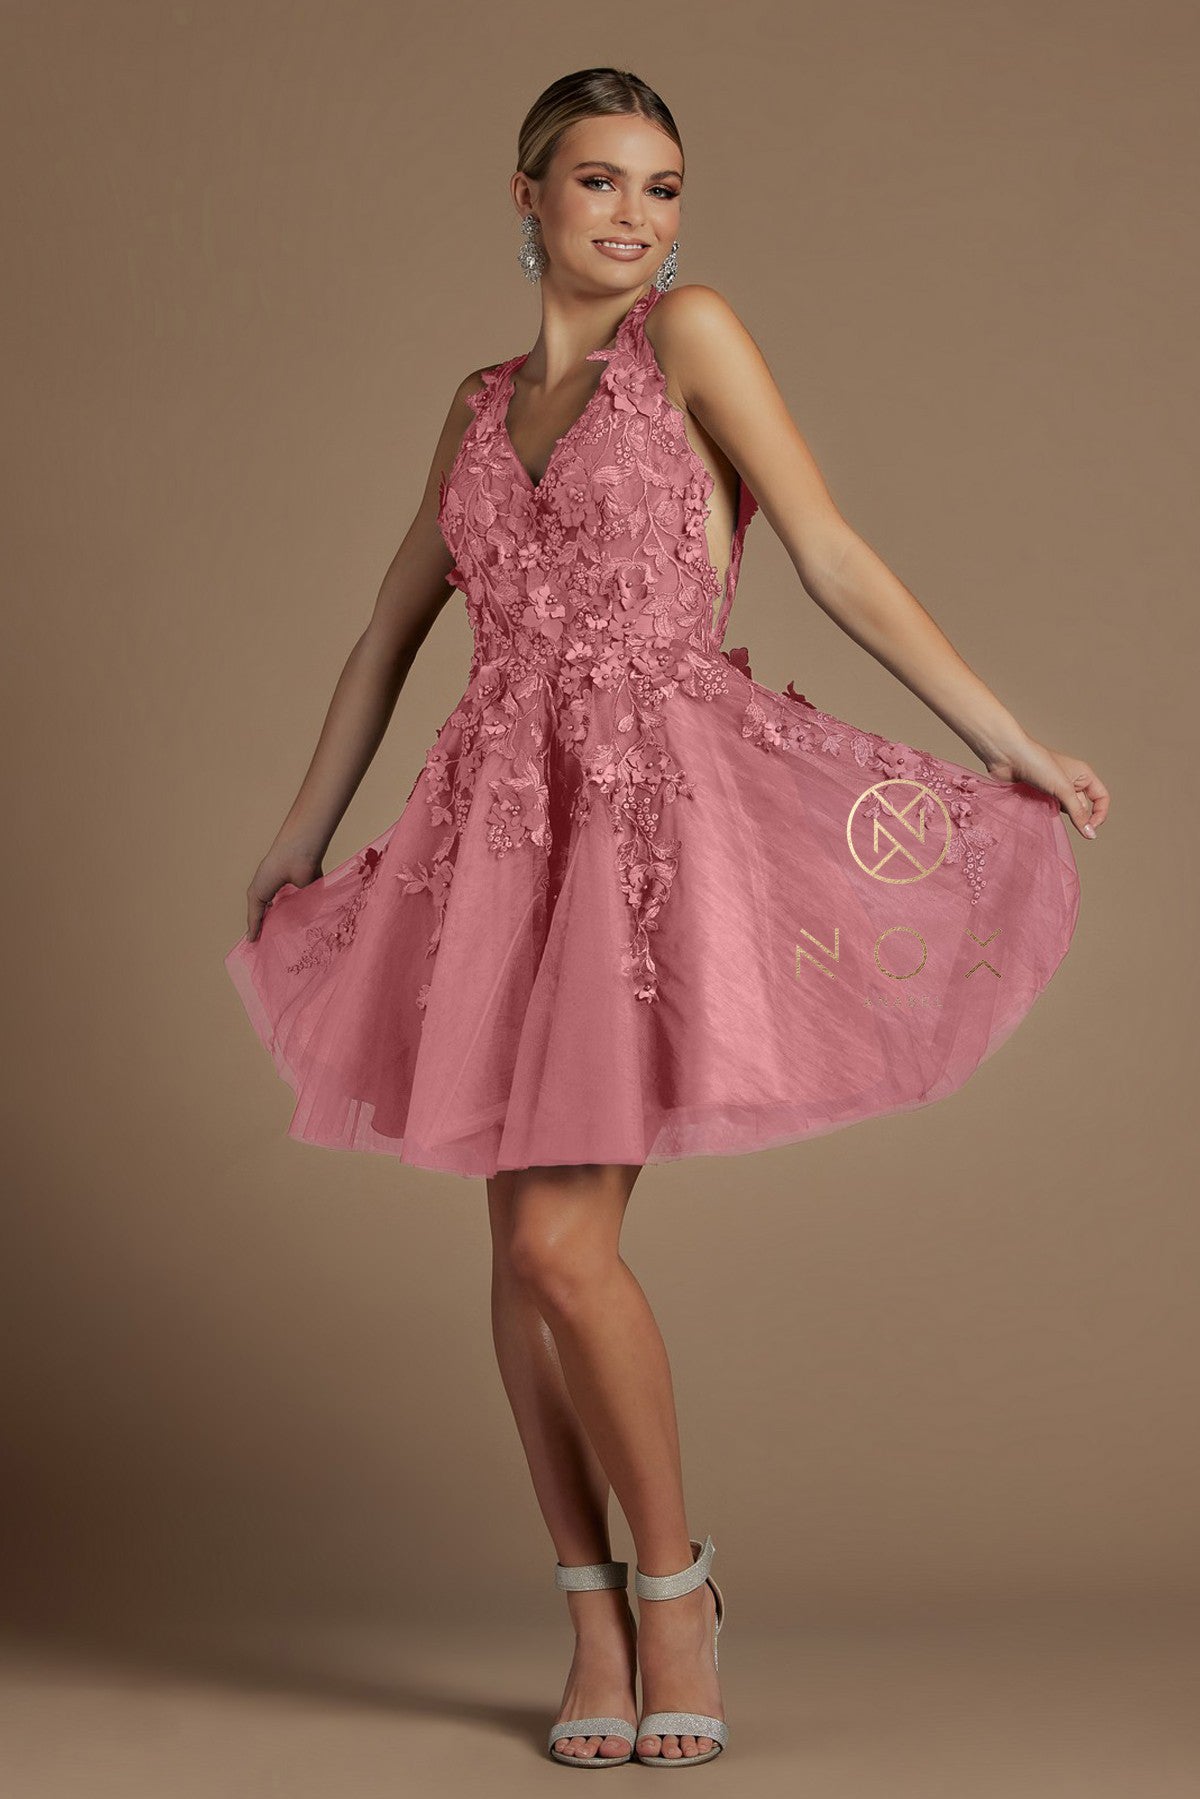 Short 3D Floral Applique Dress By Nox Anabel -R708